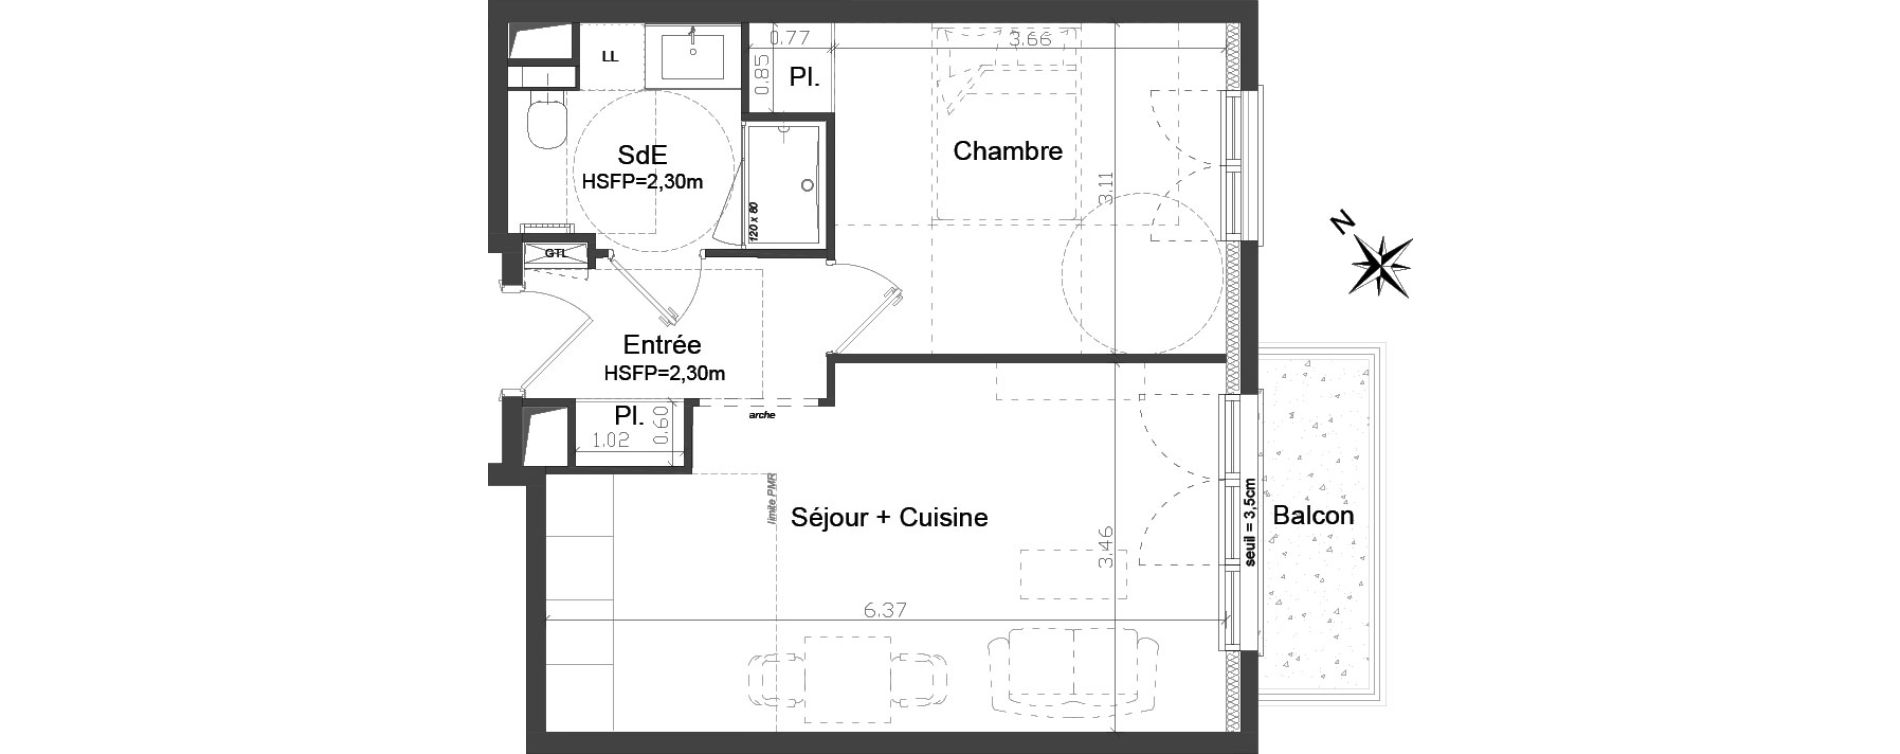 Appartement T2 meublé de 41,52 m2 à Brest Kerigonan